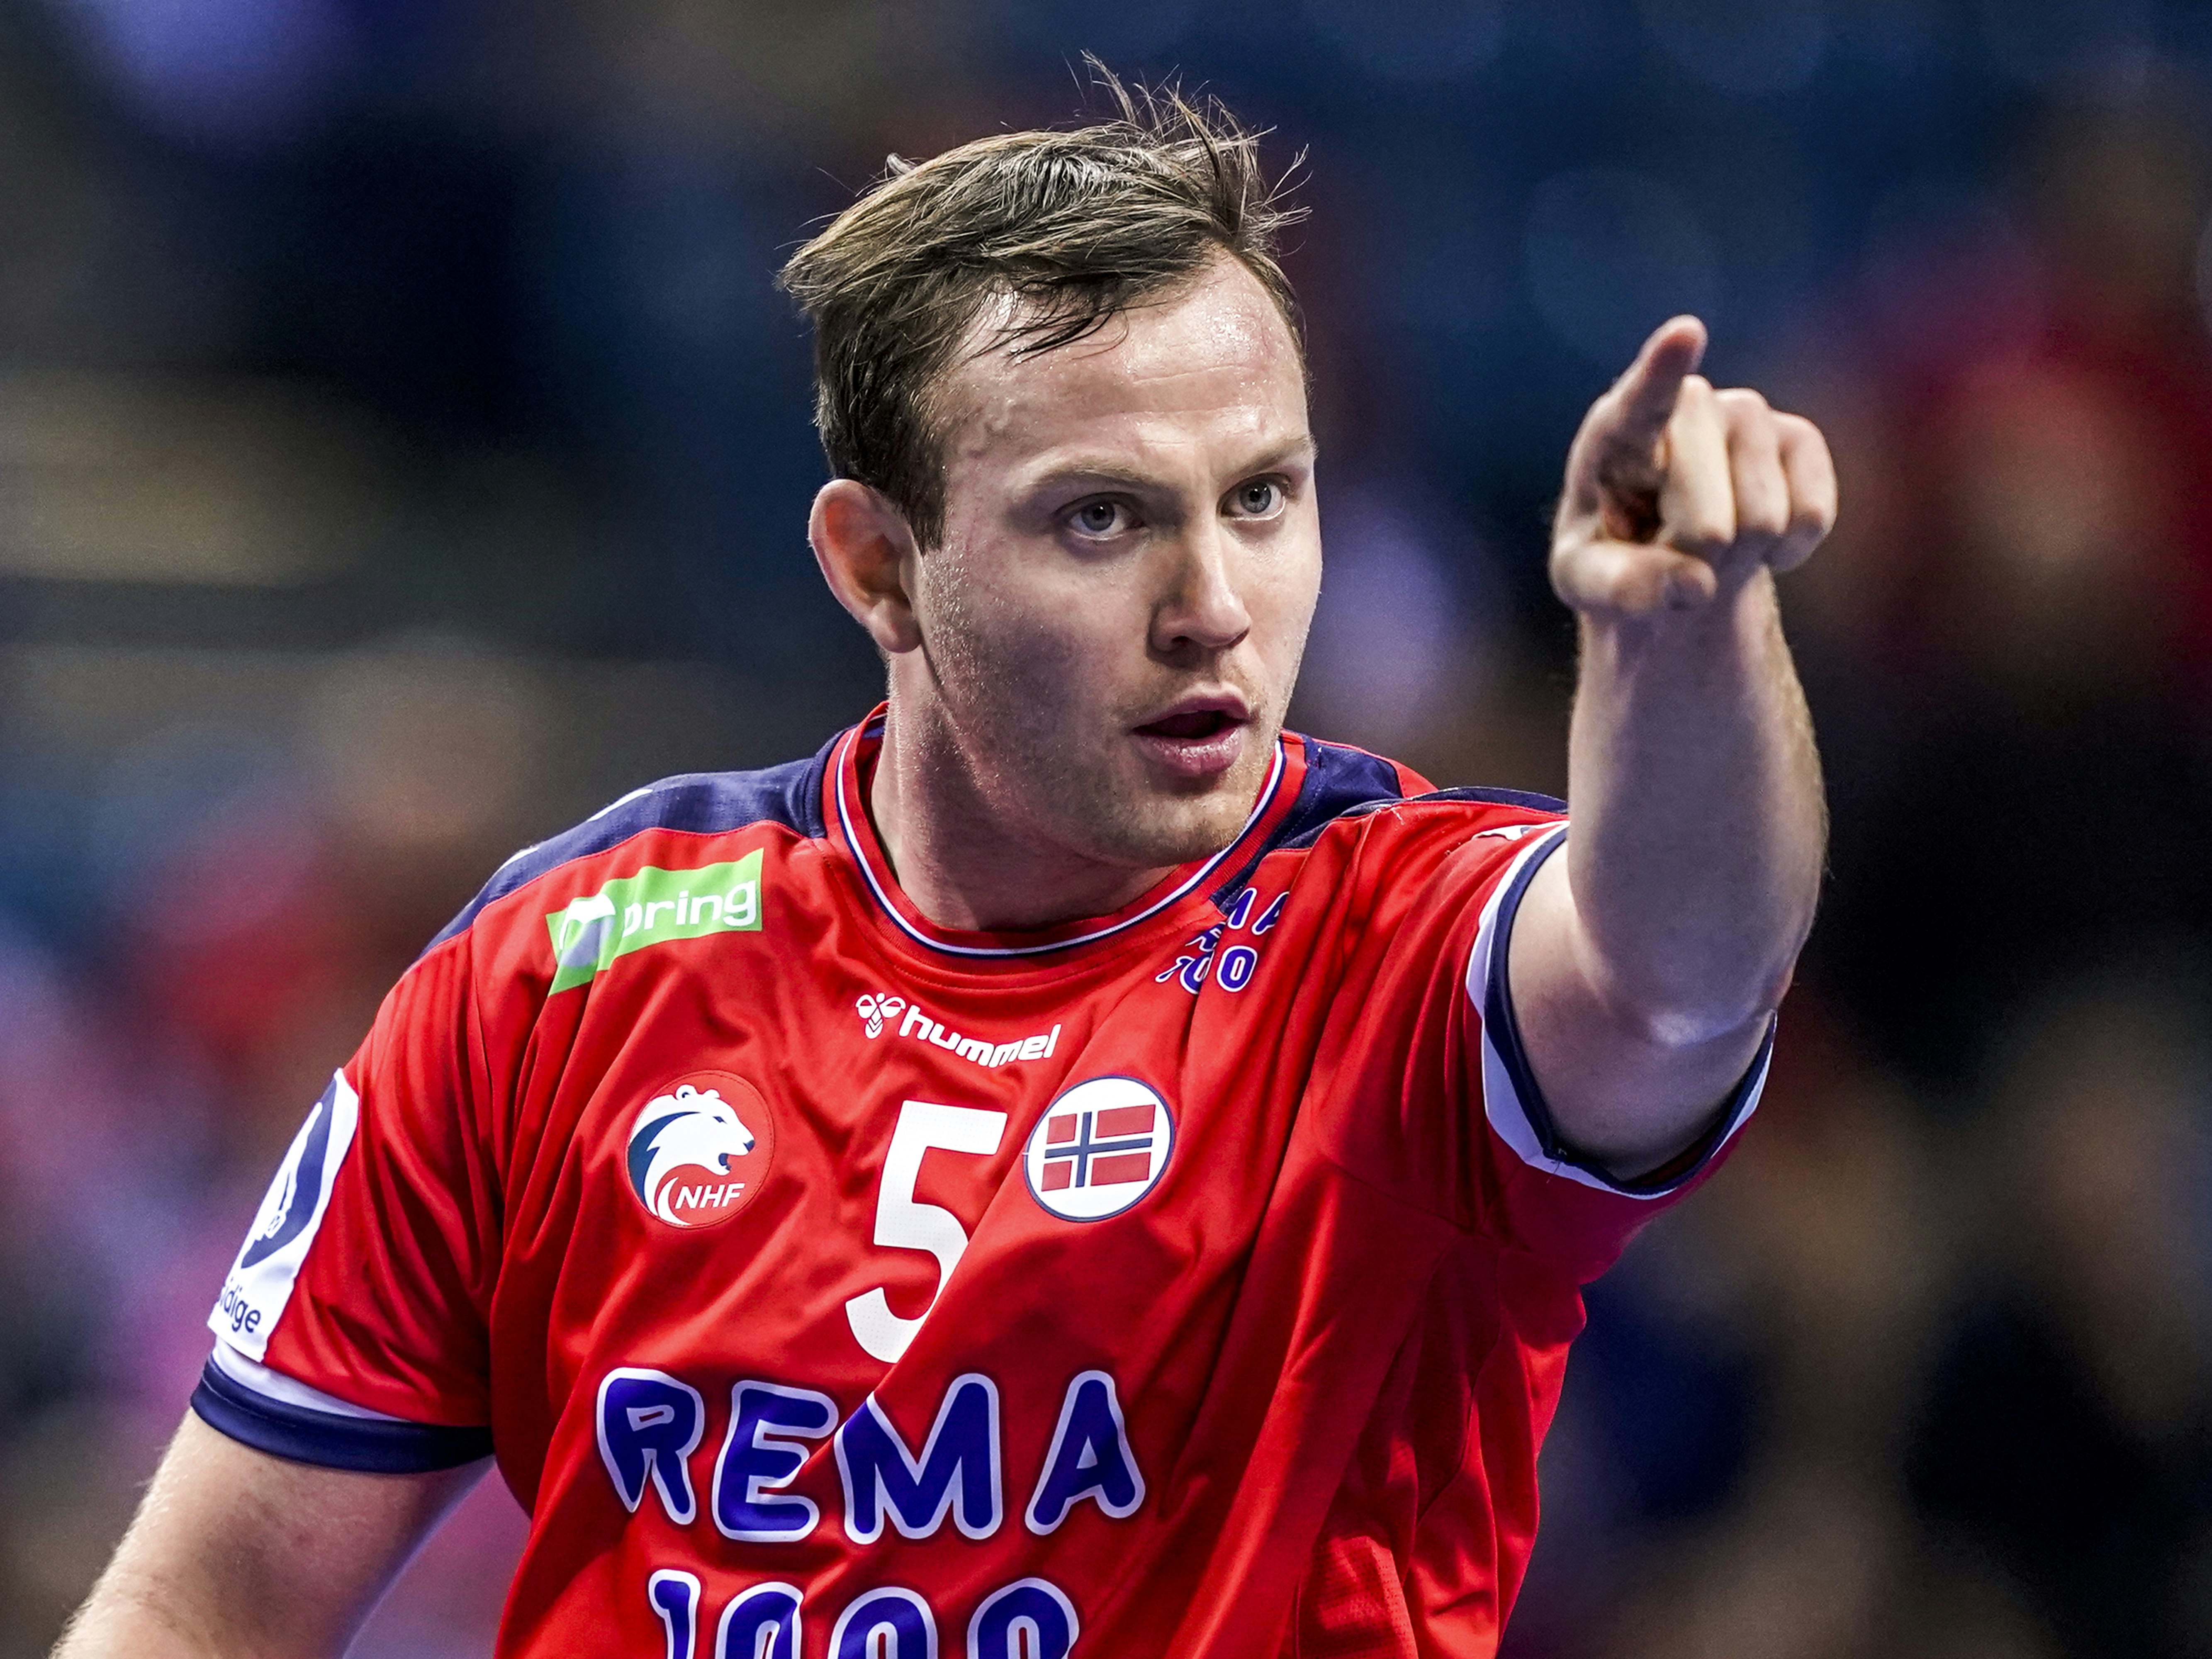 Norsk håndballspiller i rød drakt peker mot deg